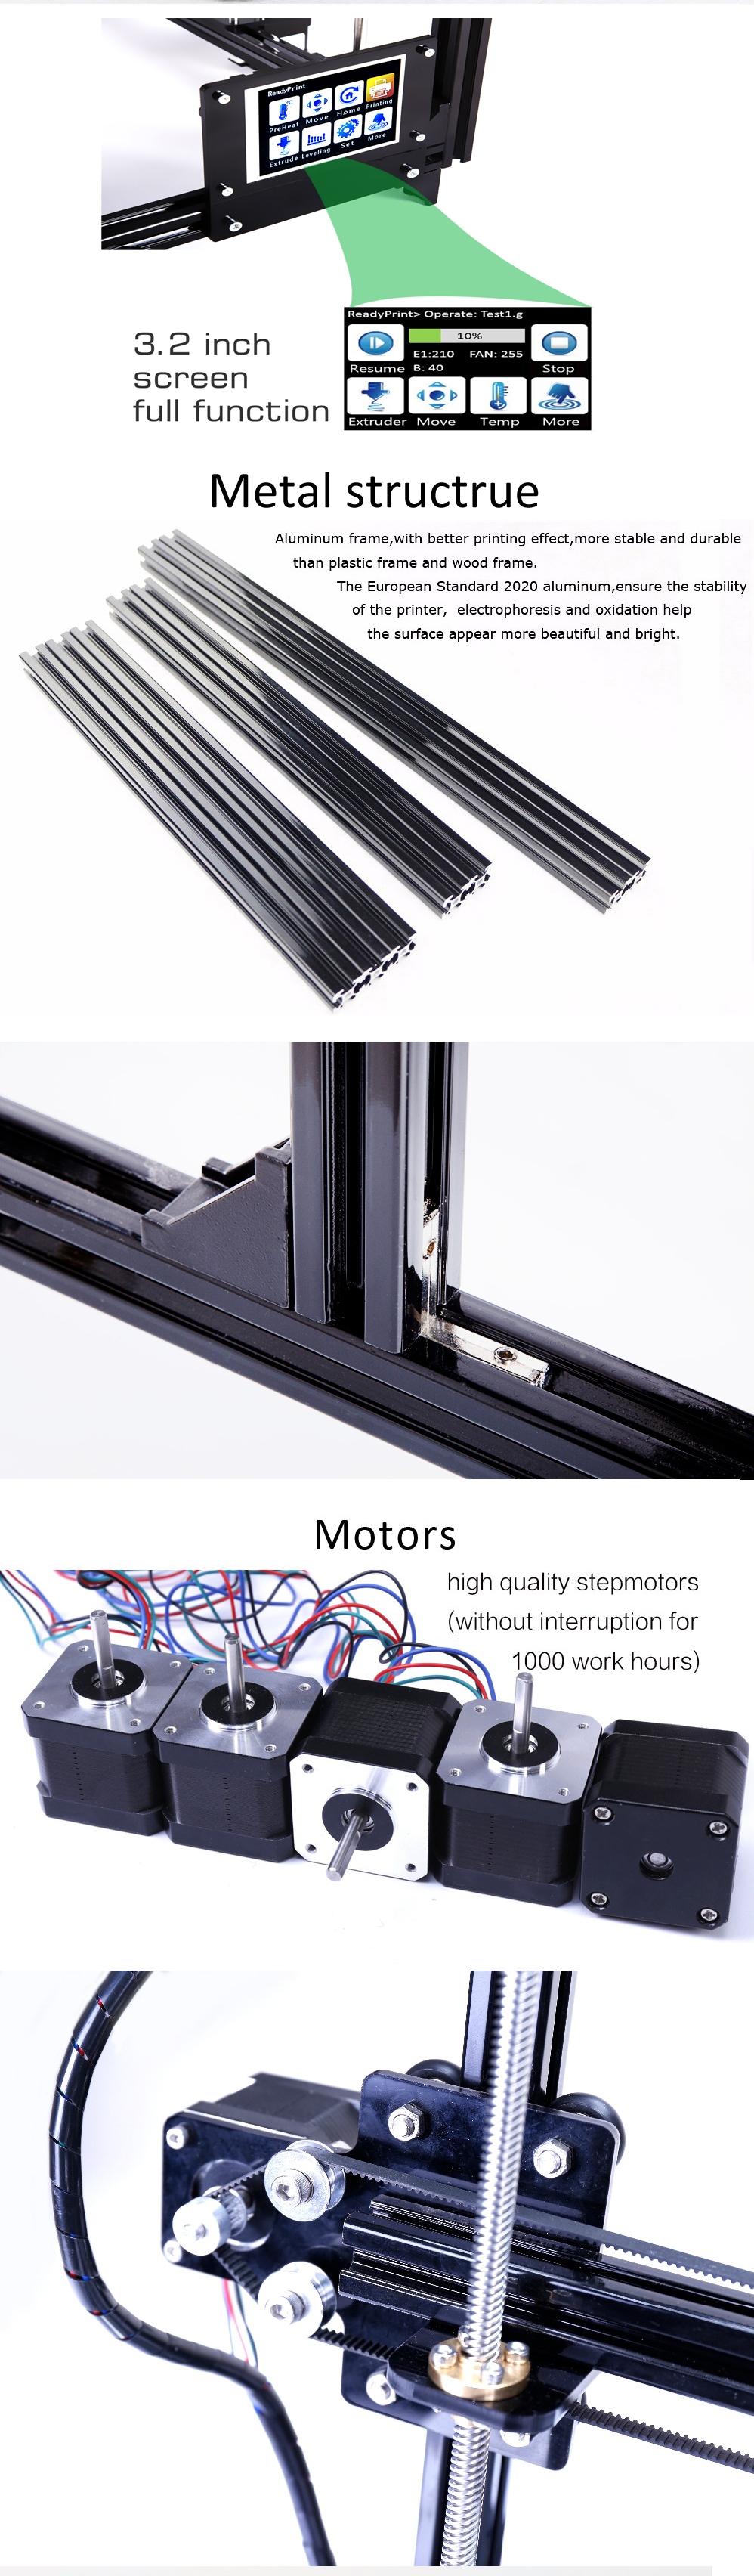 FLSUN® C Plus Desktop DIY 3D Printer With Touch Screen Dual Nozzle Auto Leveling Double Z-motors Support Flexible Filament 300*300*420mm Printing Size 10